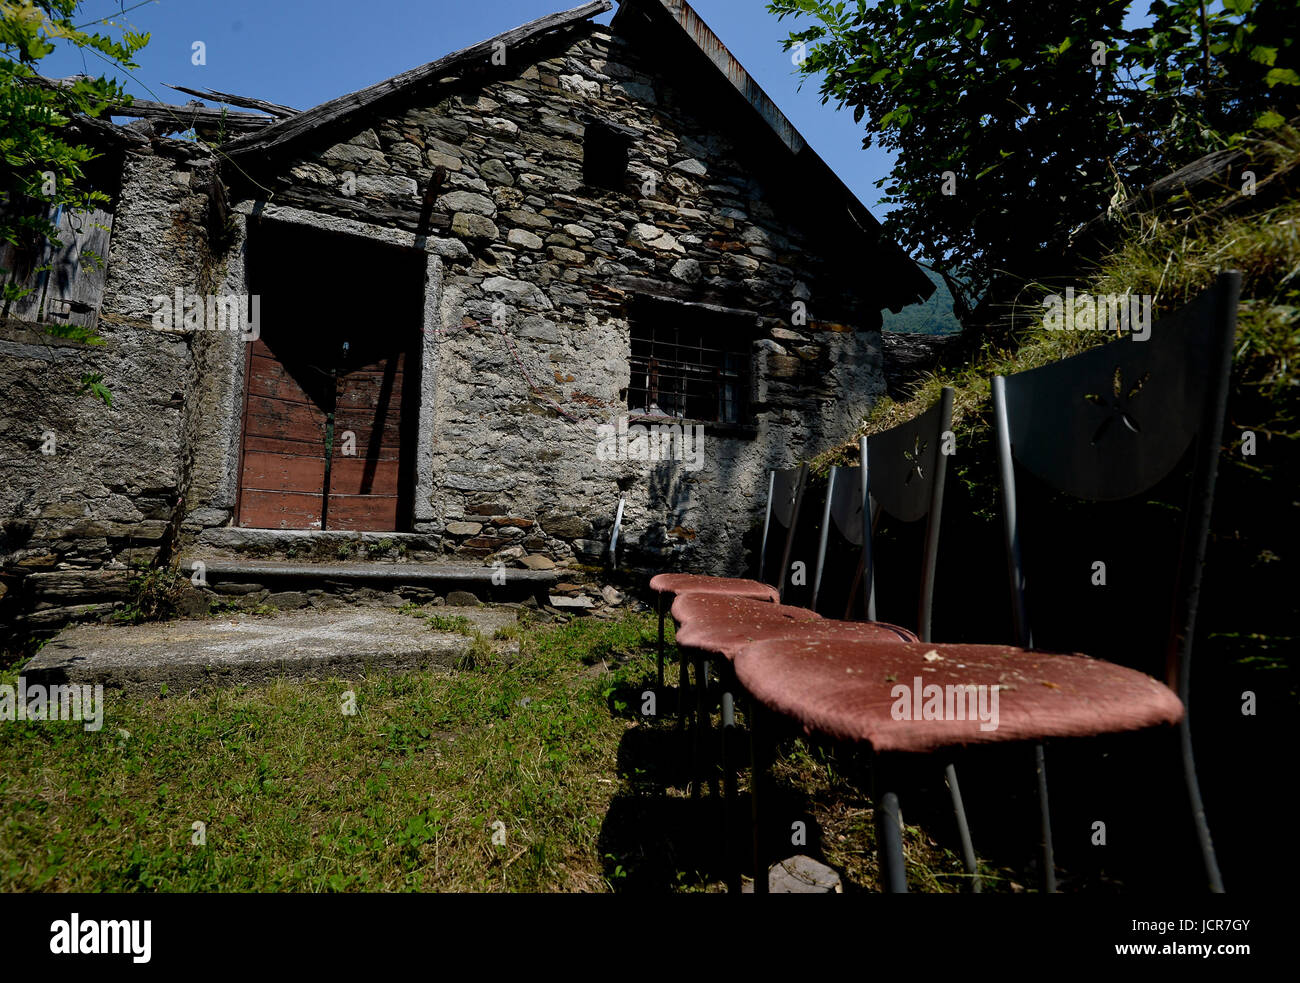 Socraggio italia val cannobina mountain village avec seulement habitant baite maisons abandonnées Banque D'Images